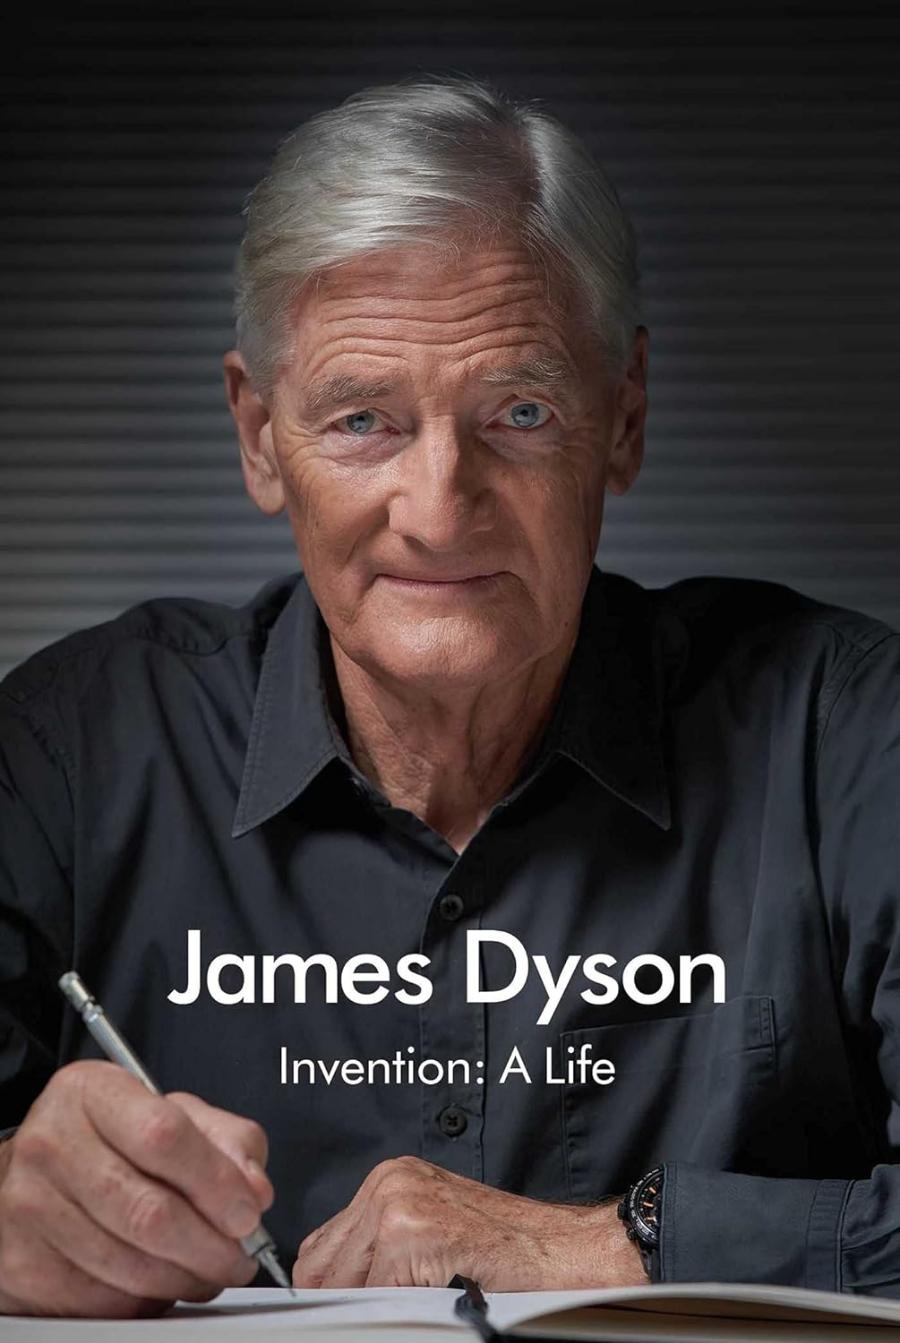 (Fot. materiały prasowe/okładka książki James Dyson  „Invention: A Life”)